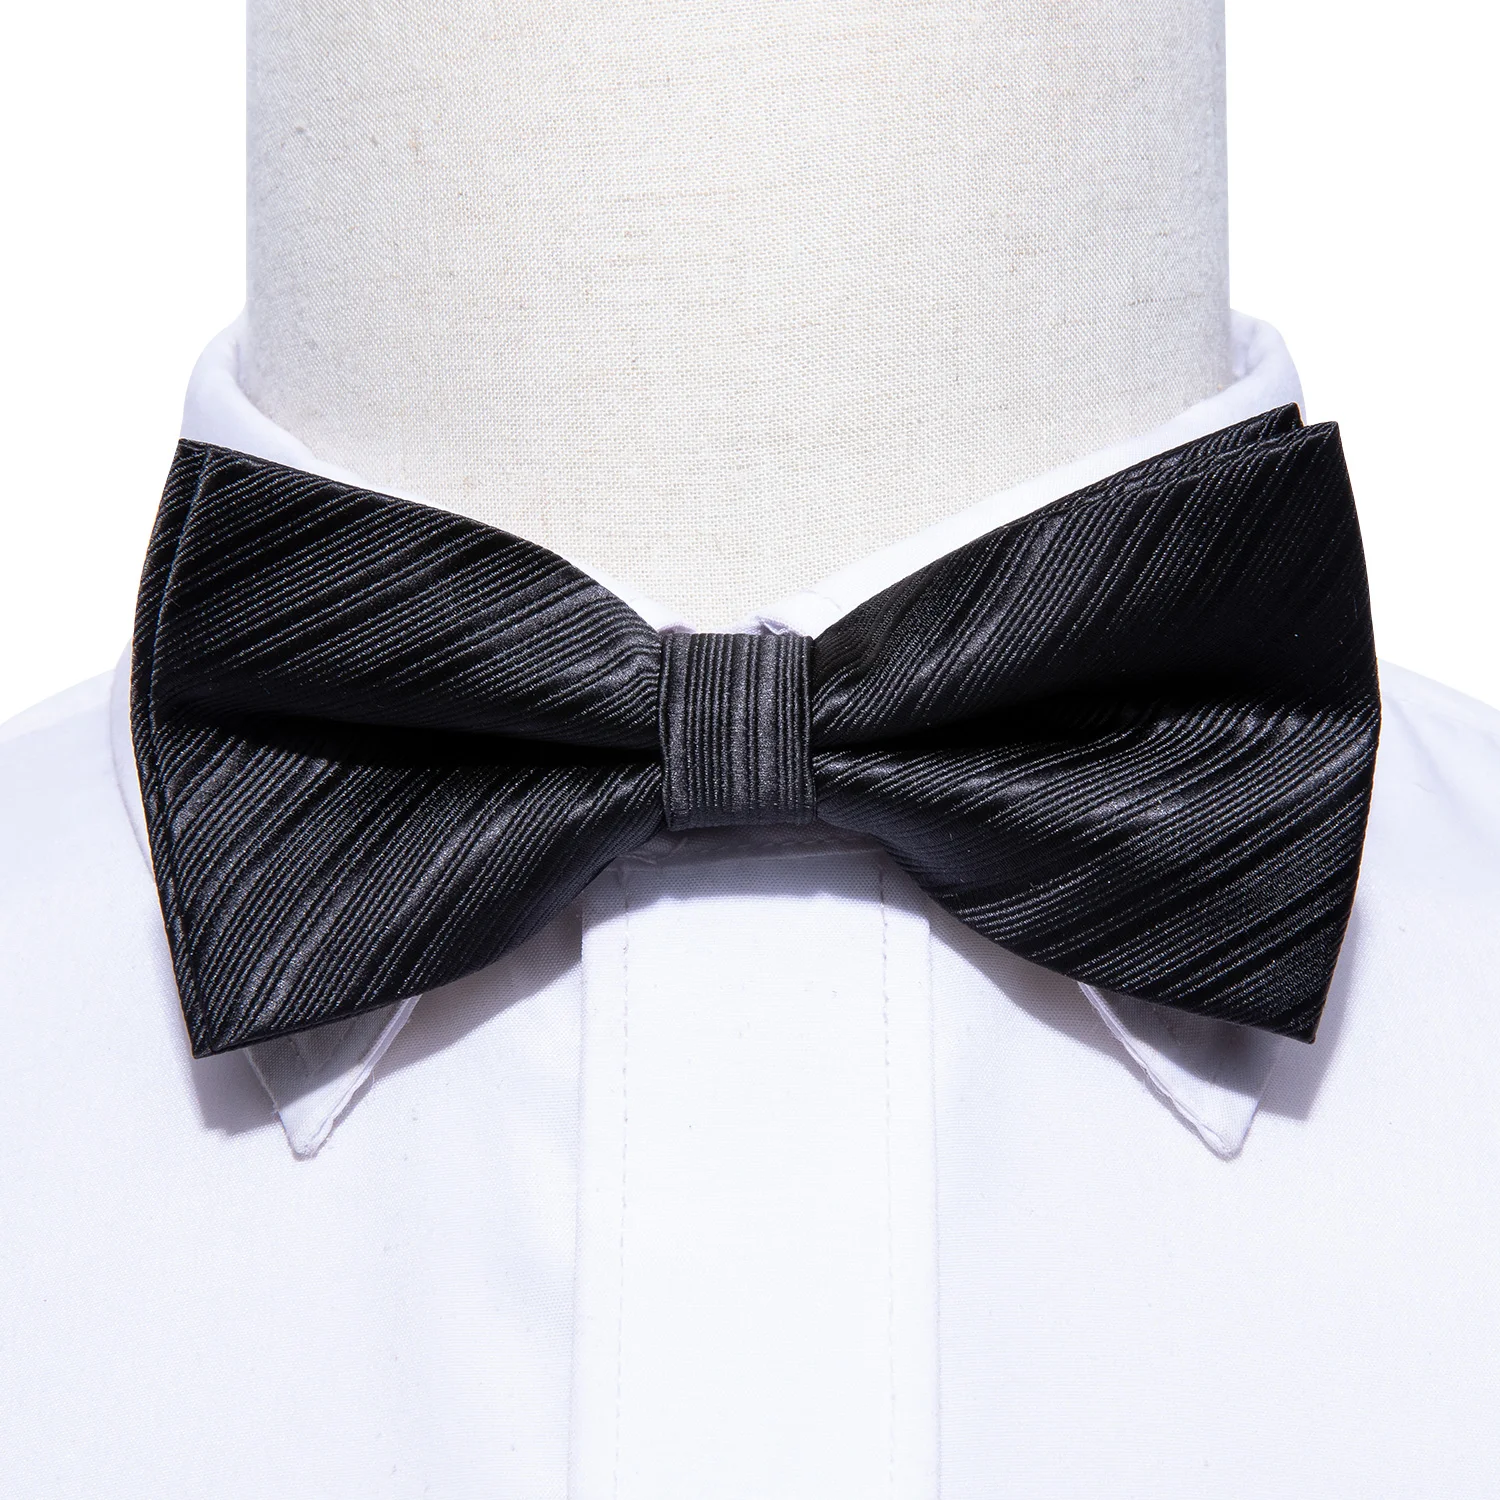 Шелковый галстук-бабочка для мужчин, Одноцветный черный галстук-бабочка, регулируемые галстуки-бабочки, формальный галстук-бабочка, предварительно завязанная бабочка Карманный платок, запонки, Barry.Wang